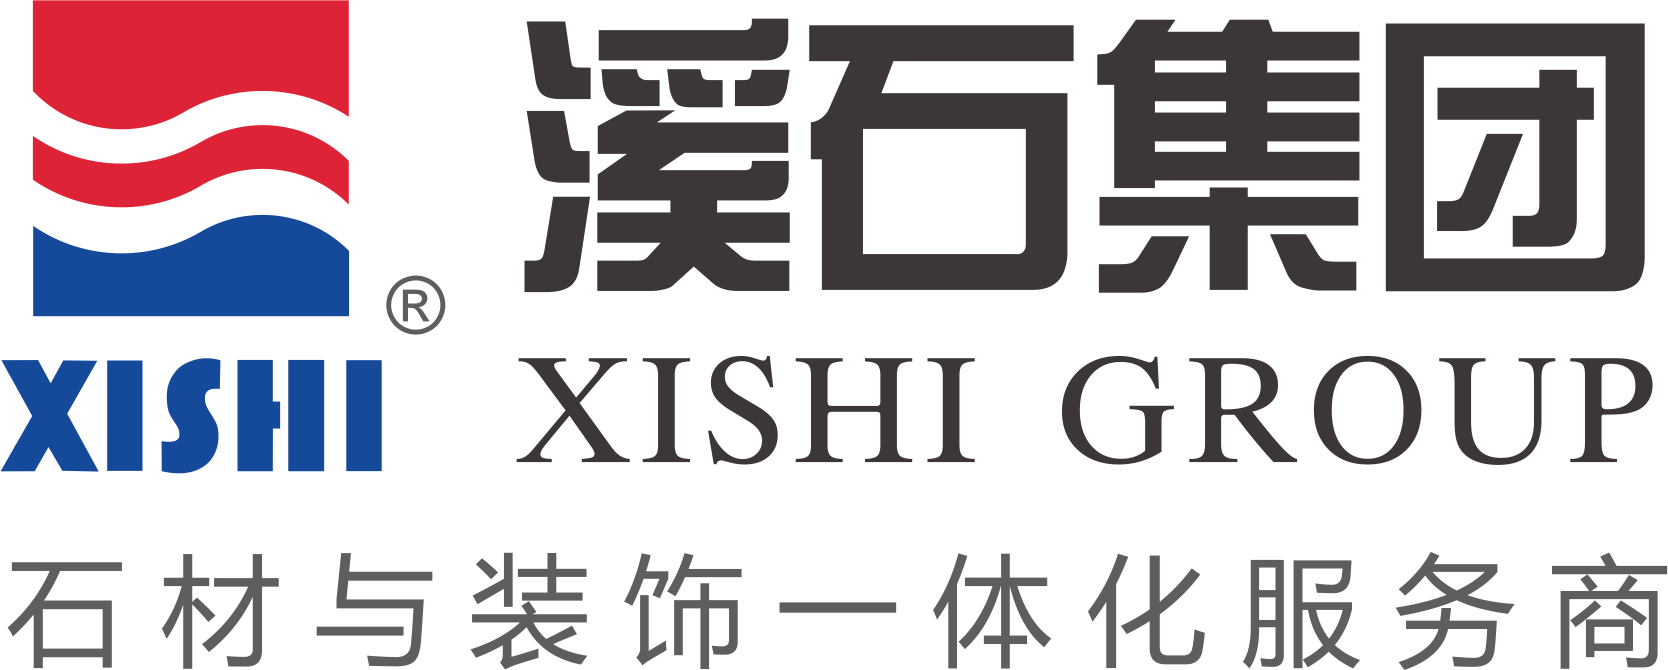 FUJIAN XISHI CO.,LTD